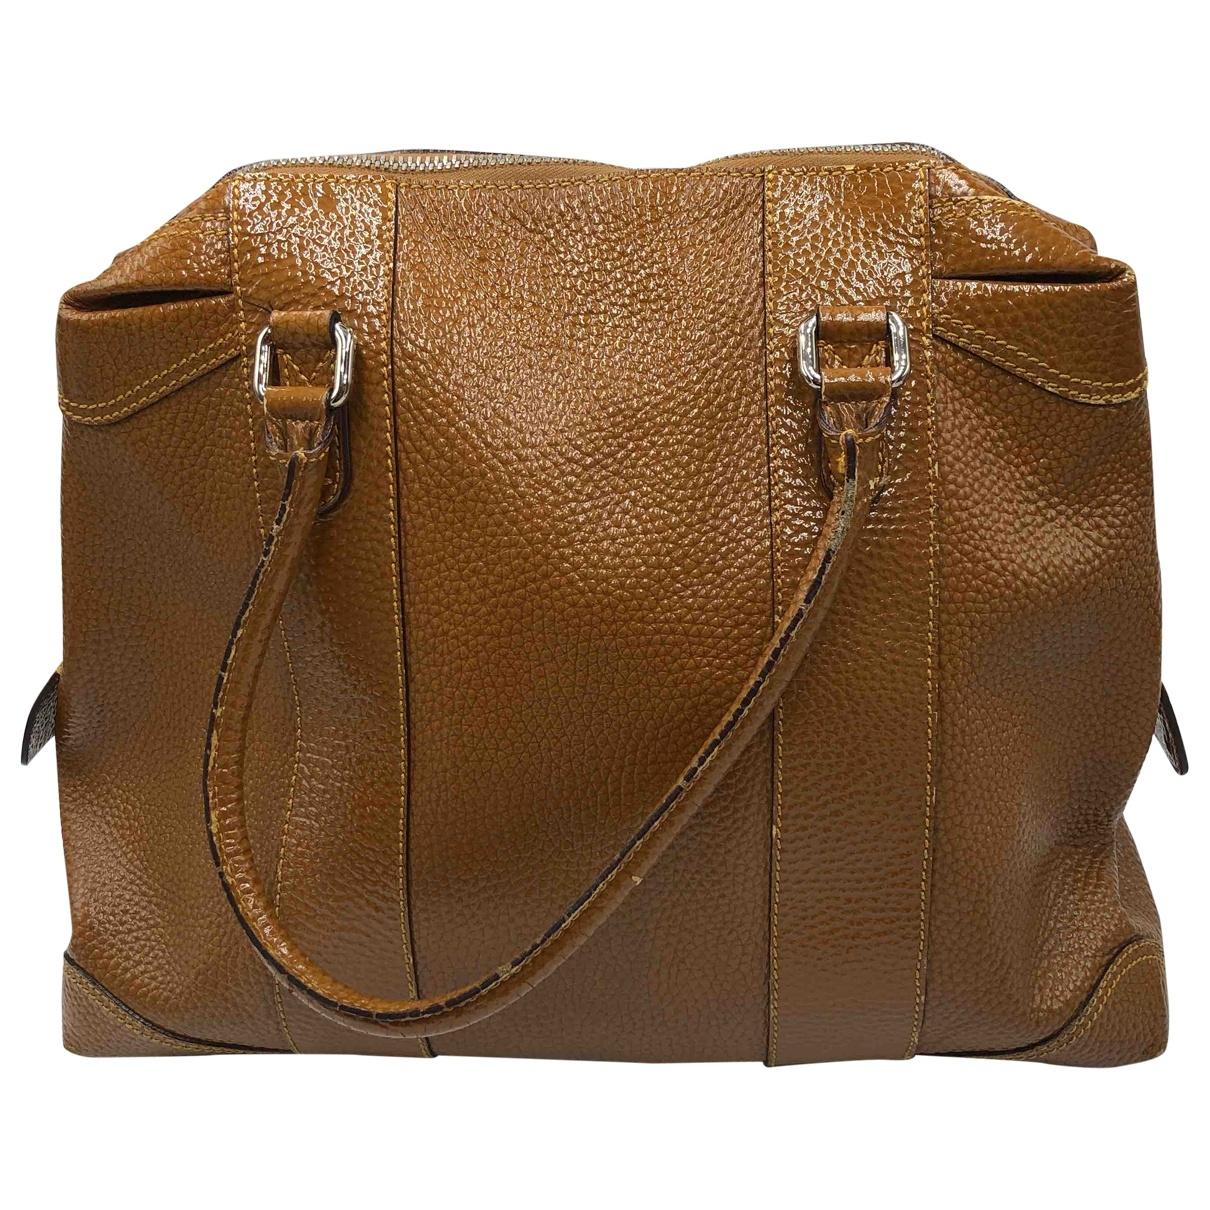 Lyst - Fendi Pre-owned Vintage Brown Leather Handbags in Brown